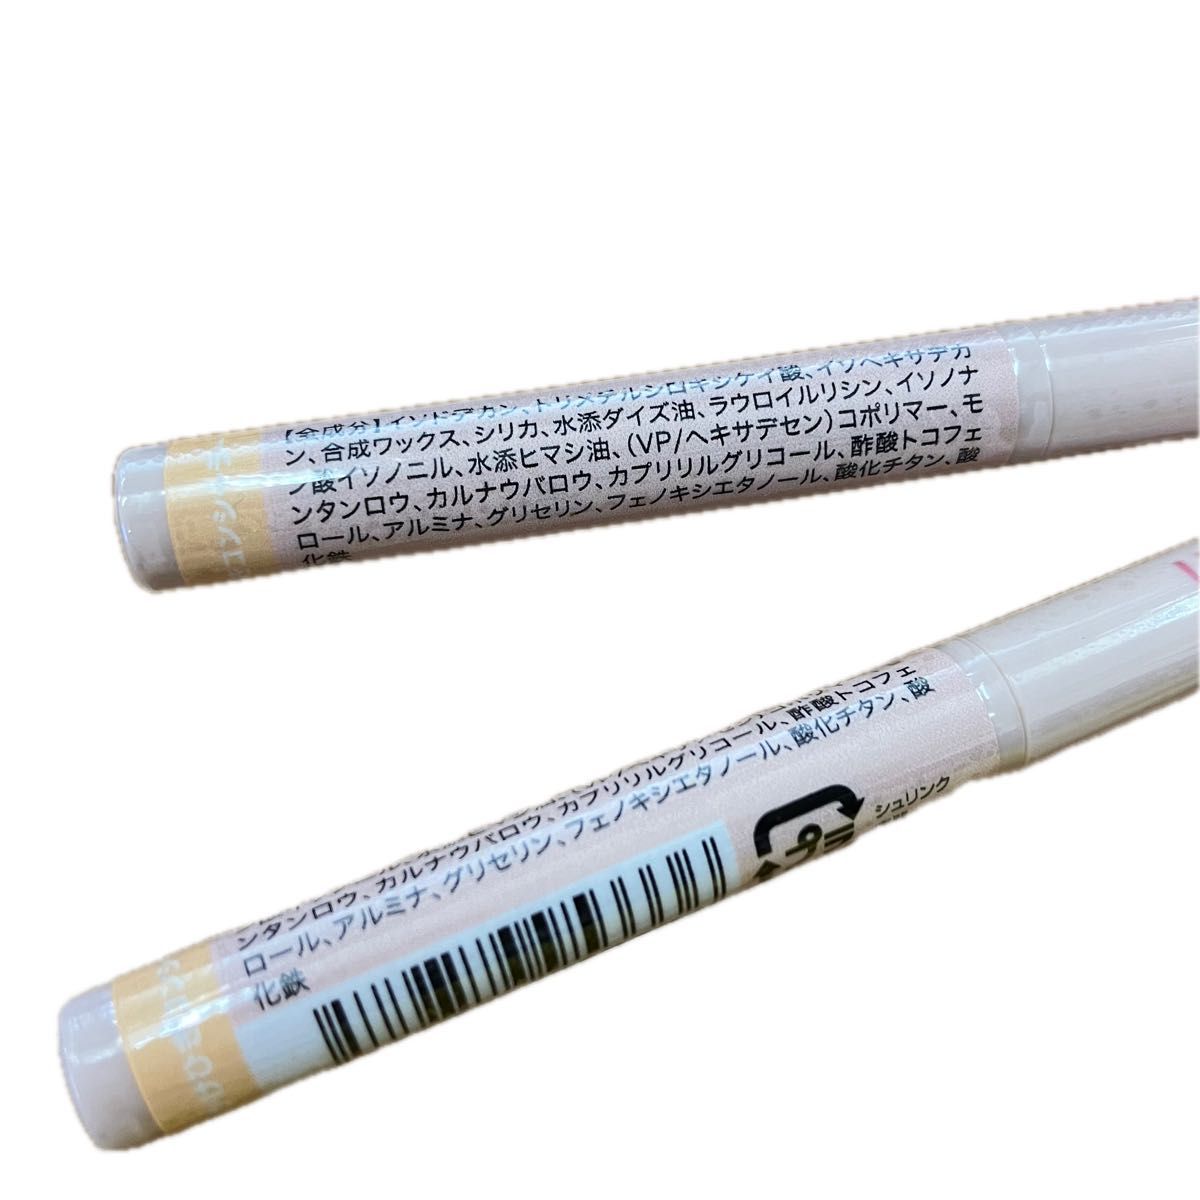 【新品未使用】2本セット ドド アンダーアイライナー 01かけひきコンシーラー 韓国コスメ プチプラ 高発色